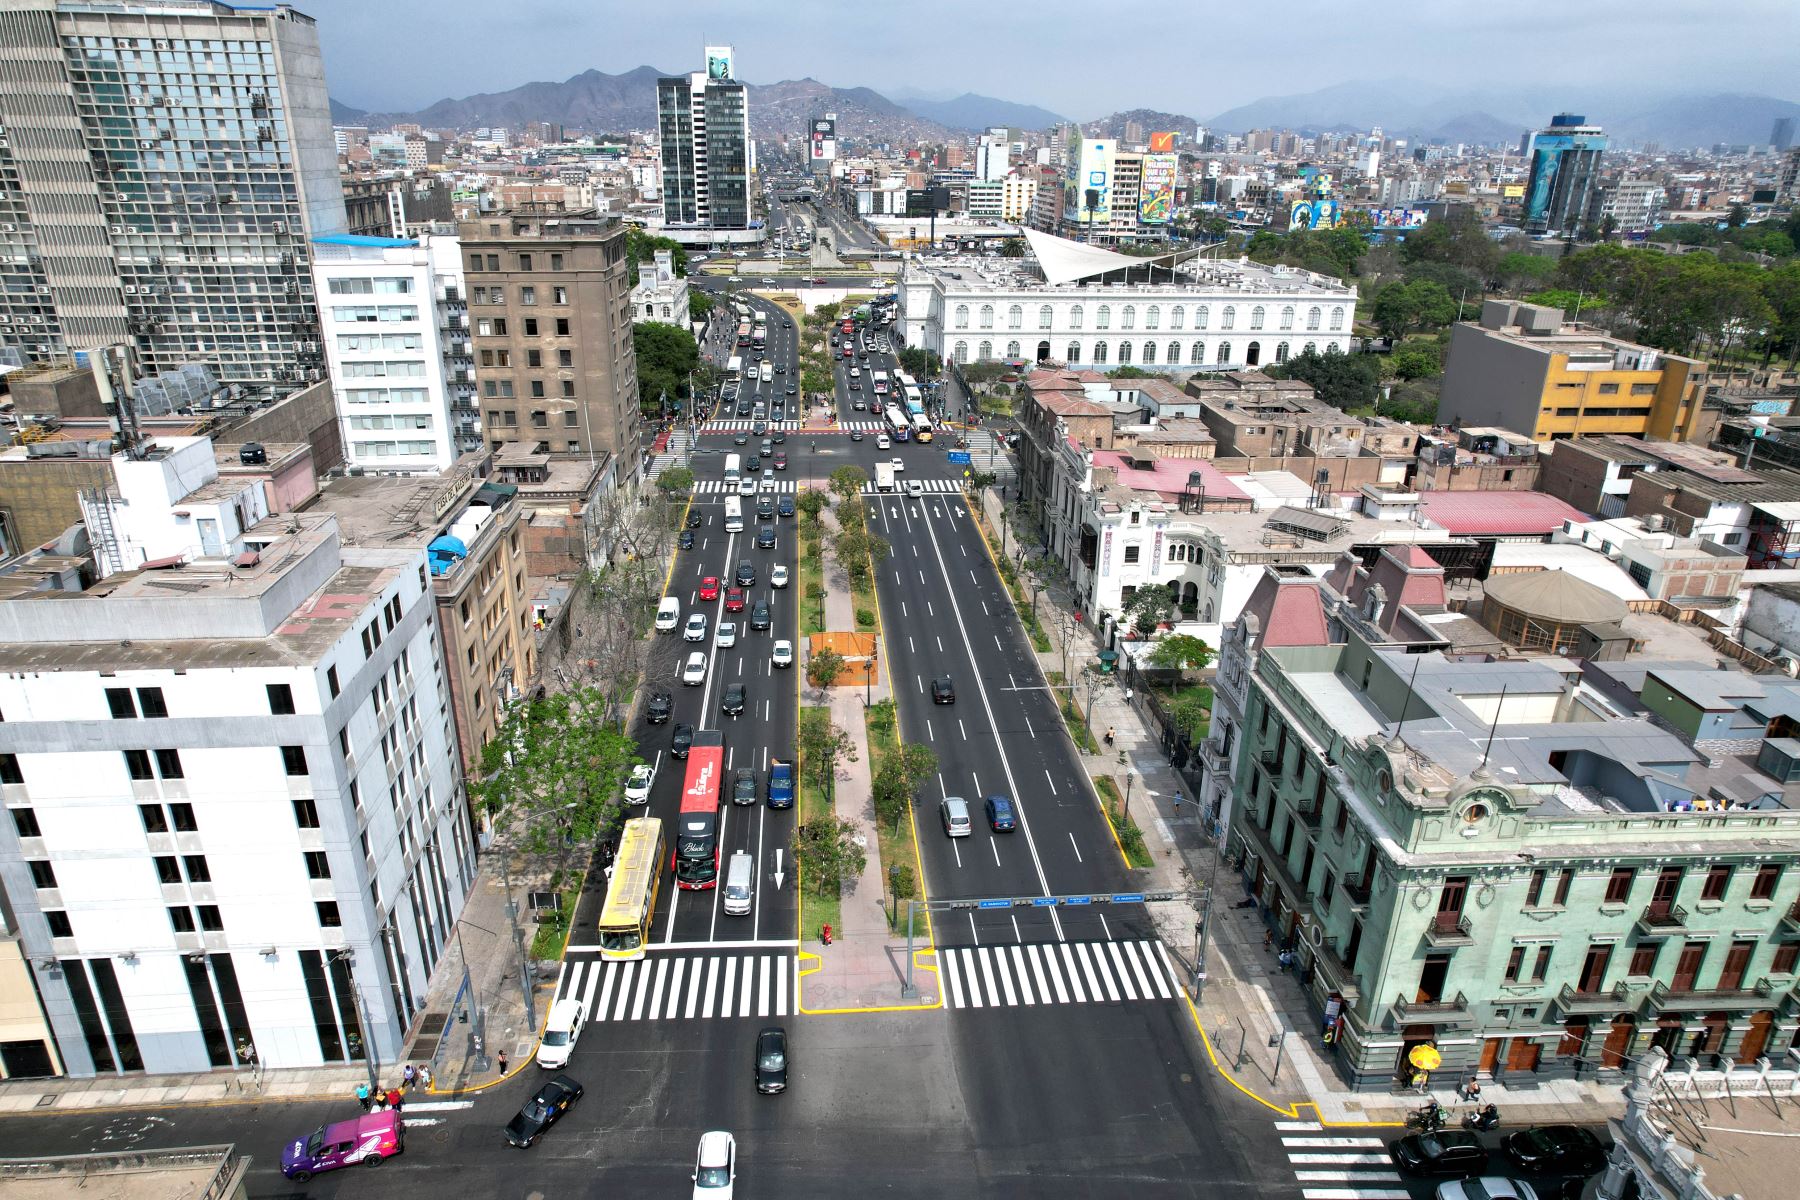 Vista aérea del sector del Cercado donde se construirá la Estación Central del Metro de Lima, la cual se conectará con el Metropolitano.
Foto: ANDINA/Ricardo Cuba